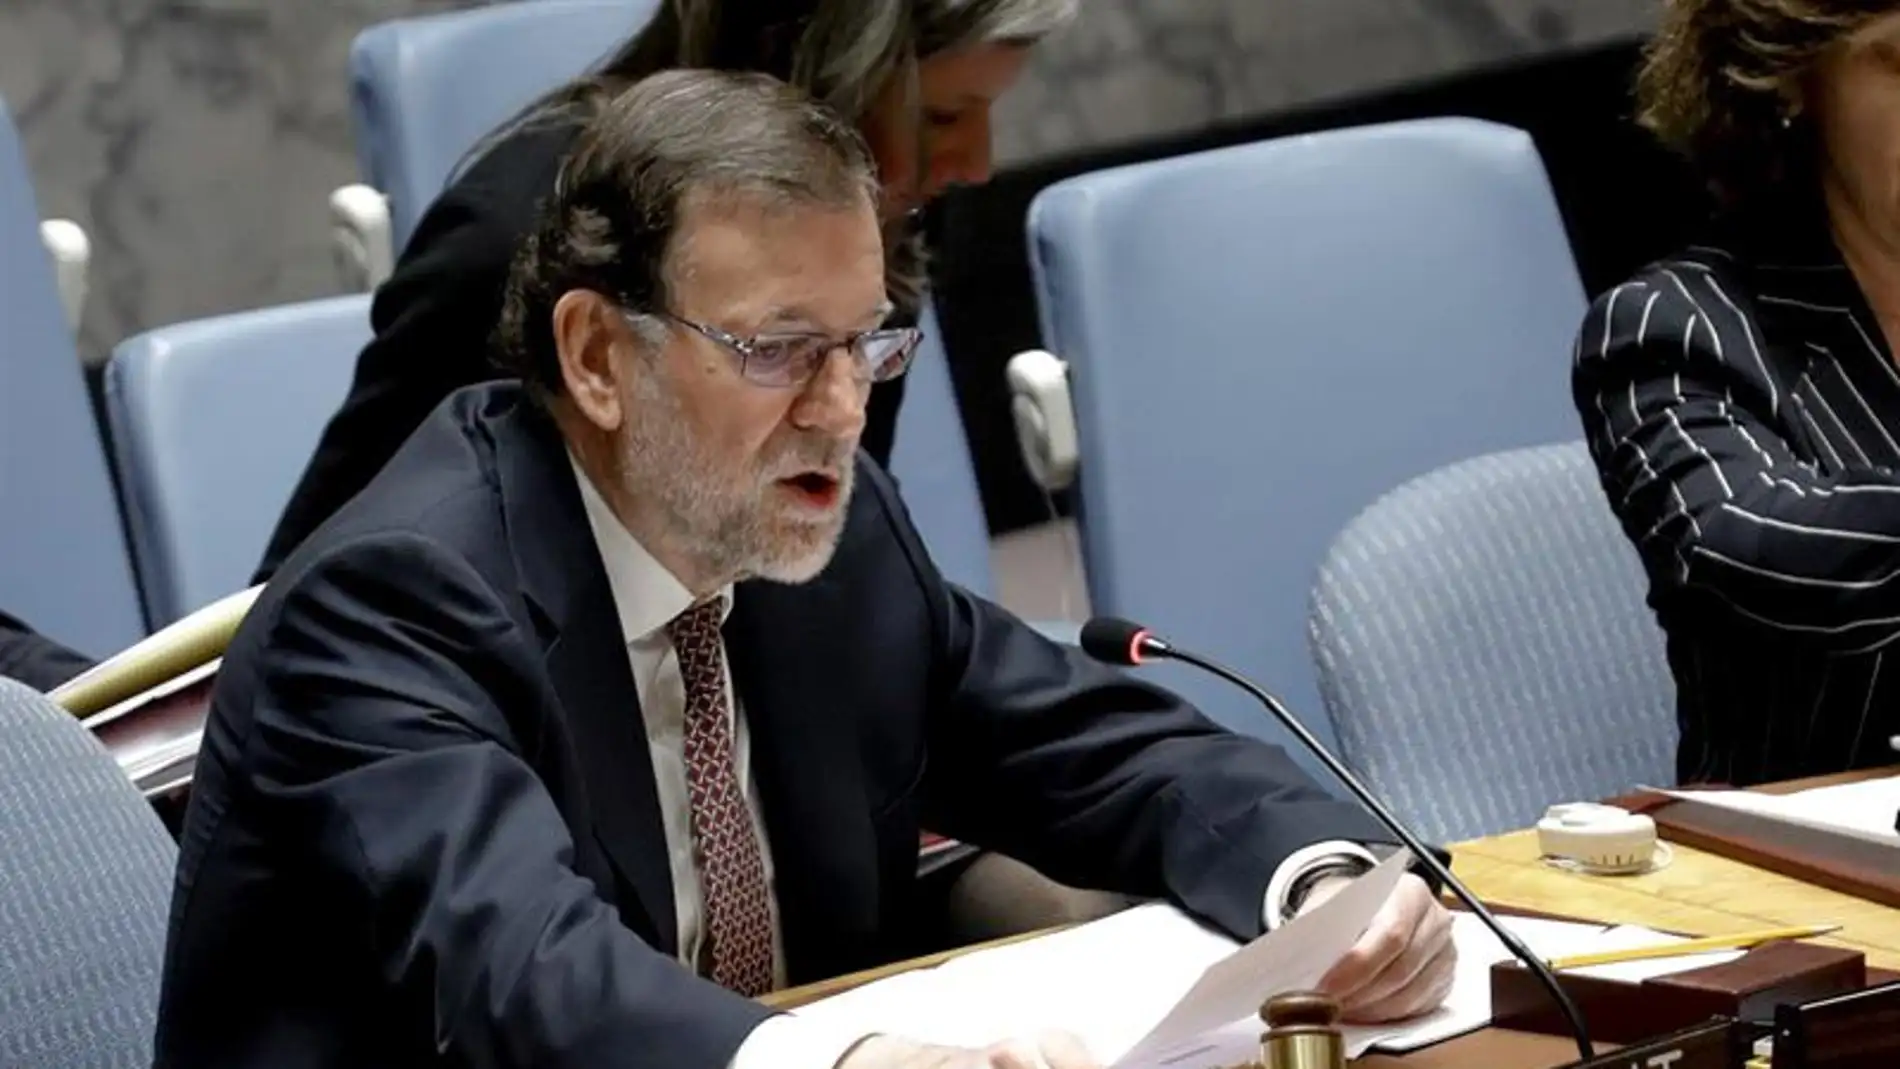 El presidente del Gobierno, Mariano Rajoy, preside la sesión del Consejo de Seguridad de la ONU